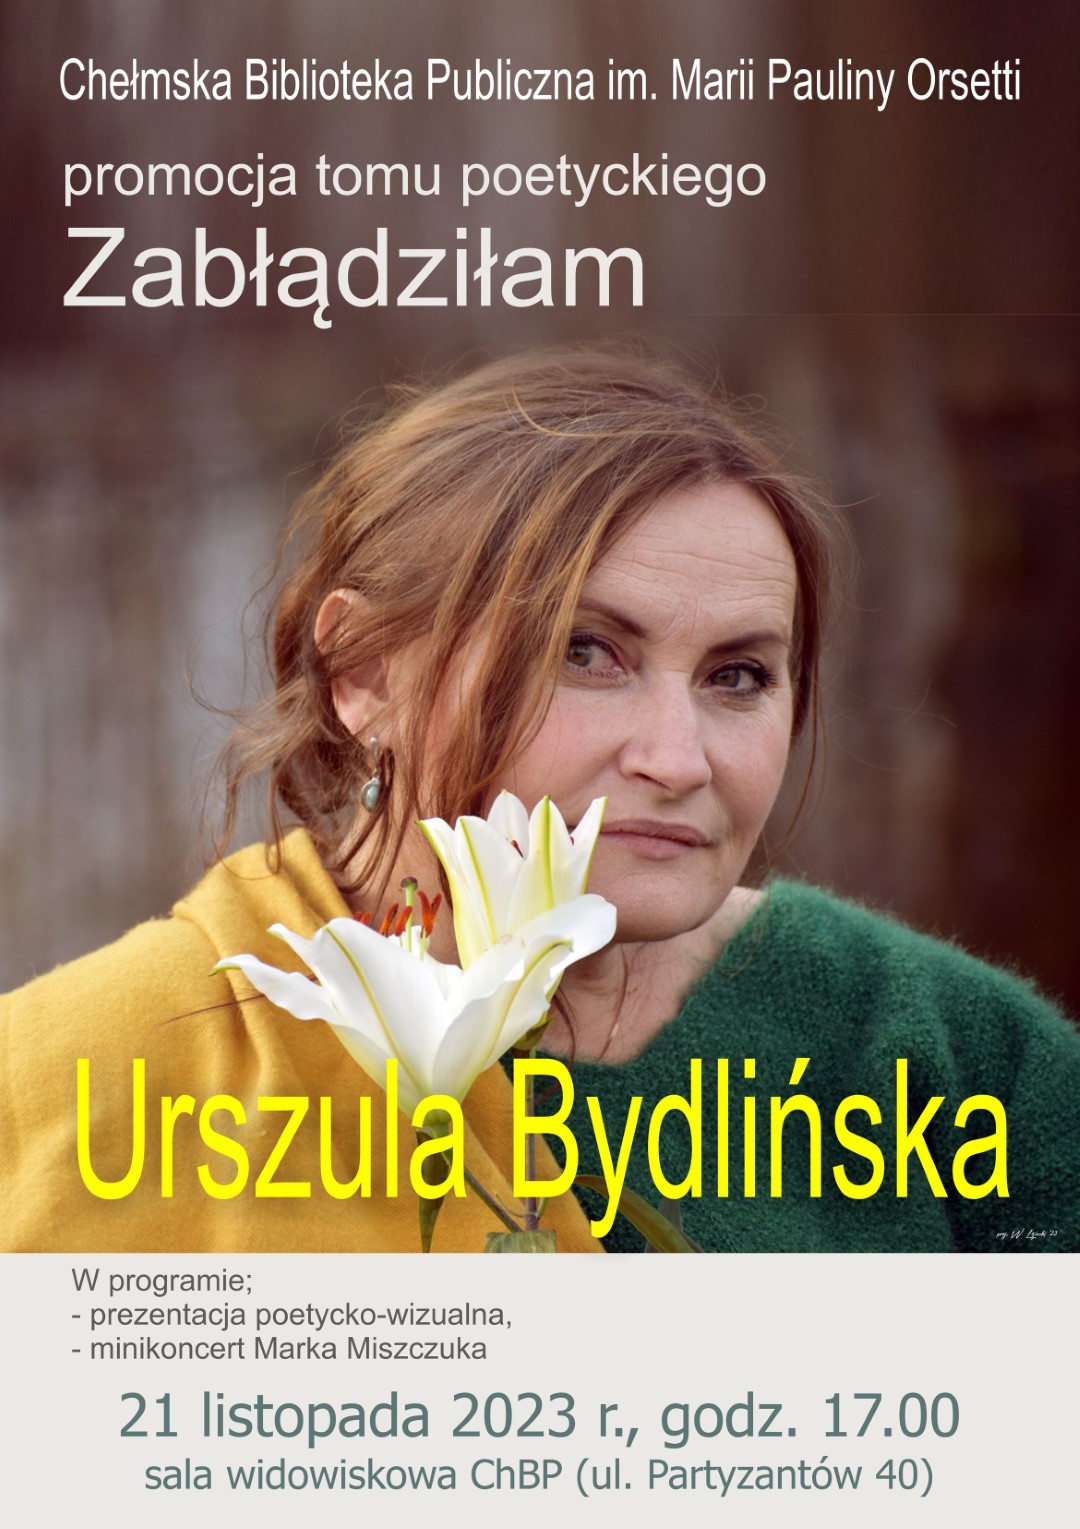 Plakat promujący promocję tomiku poetyckiego Urszuli Bydlińskiej pt Zbłądziłam. Na plakacie autorka - kobieta o brązowych włosach trzymająca kwiat lilii, ubrana żółta bluzę i zielony sweter